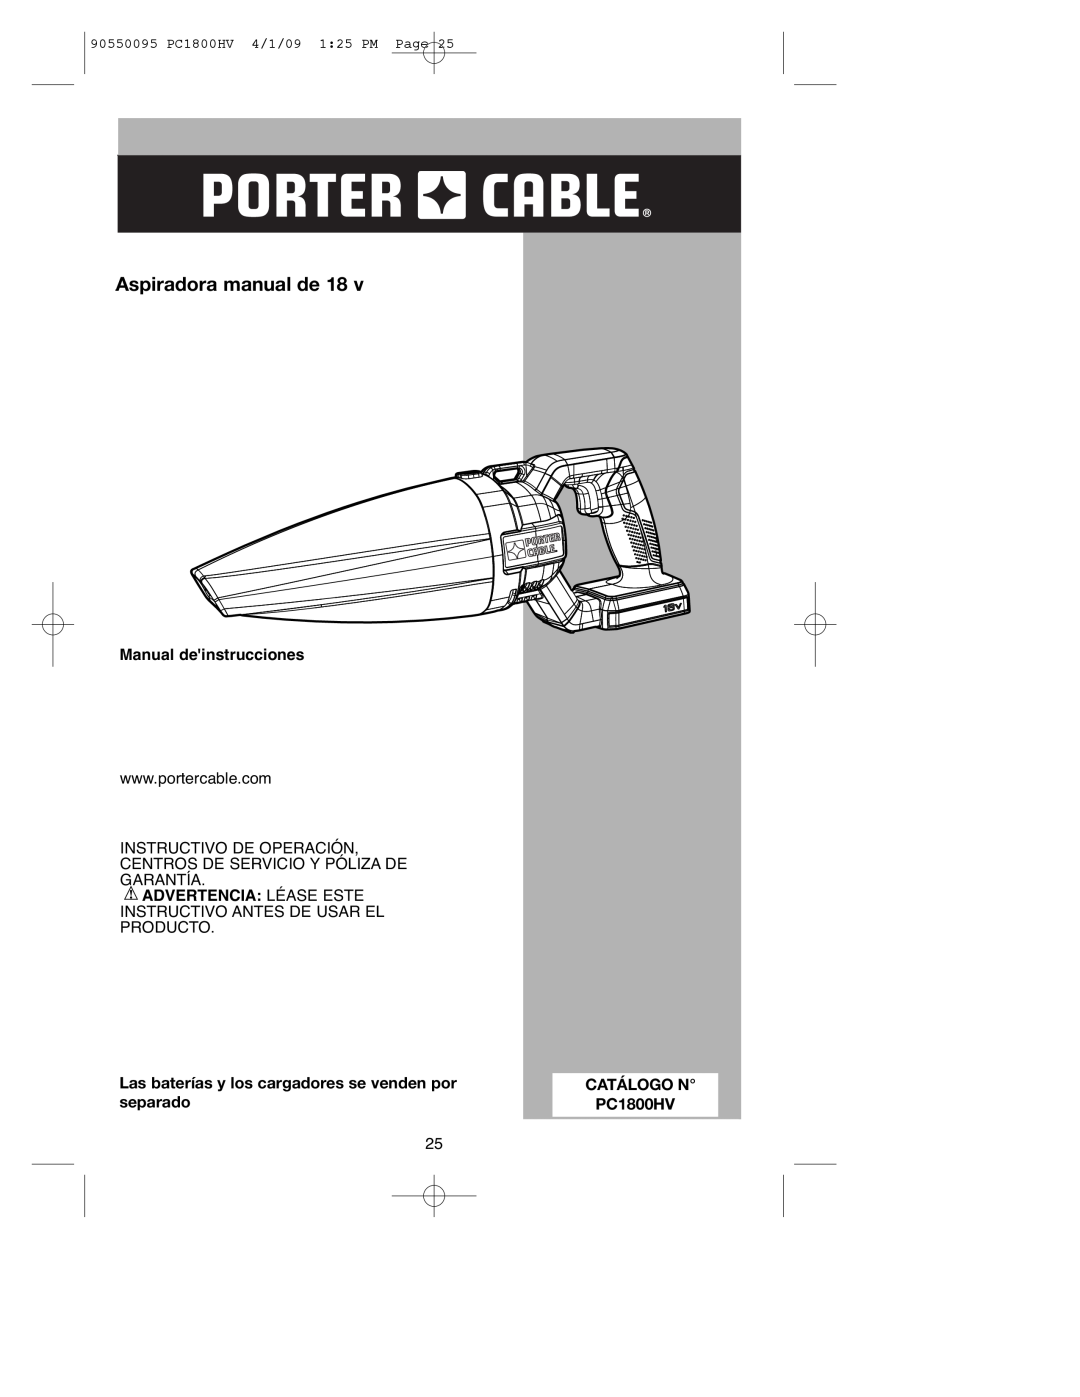 Porter-Cable PC1800HV Manual deinstrucciones, Advertencia Léase Este, Las baterías y los cargadores se venden por 